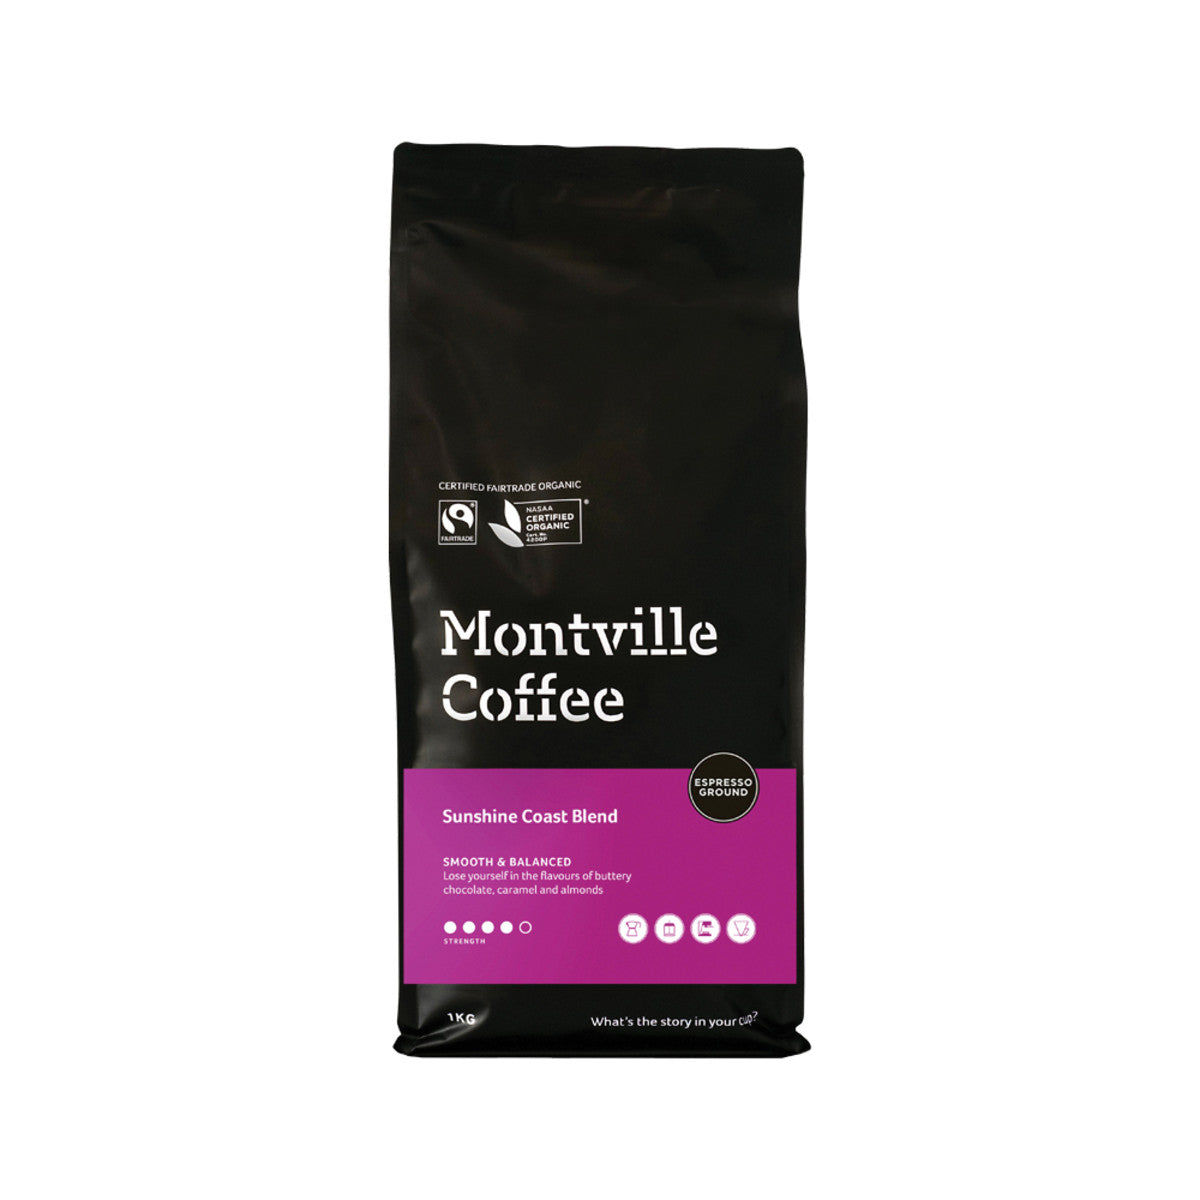 Montville Coffee - Organic Sunshine Coast Blend Espresso Ground